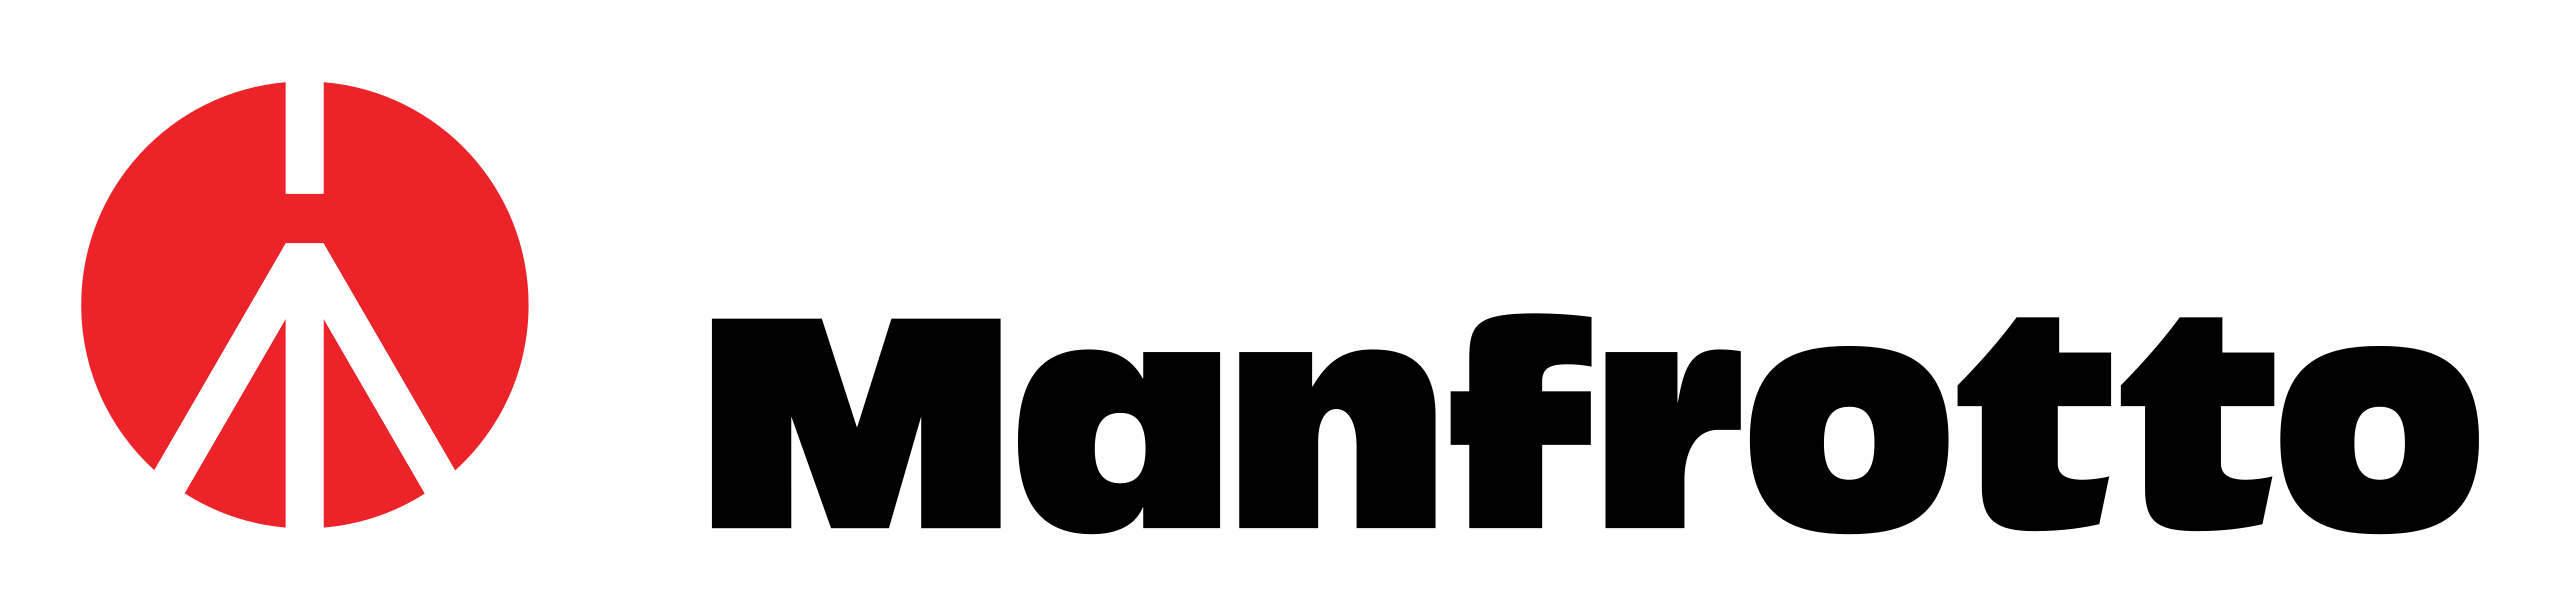 ファイル:Manfrotto Logo.svg - Wikipedia